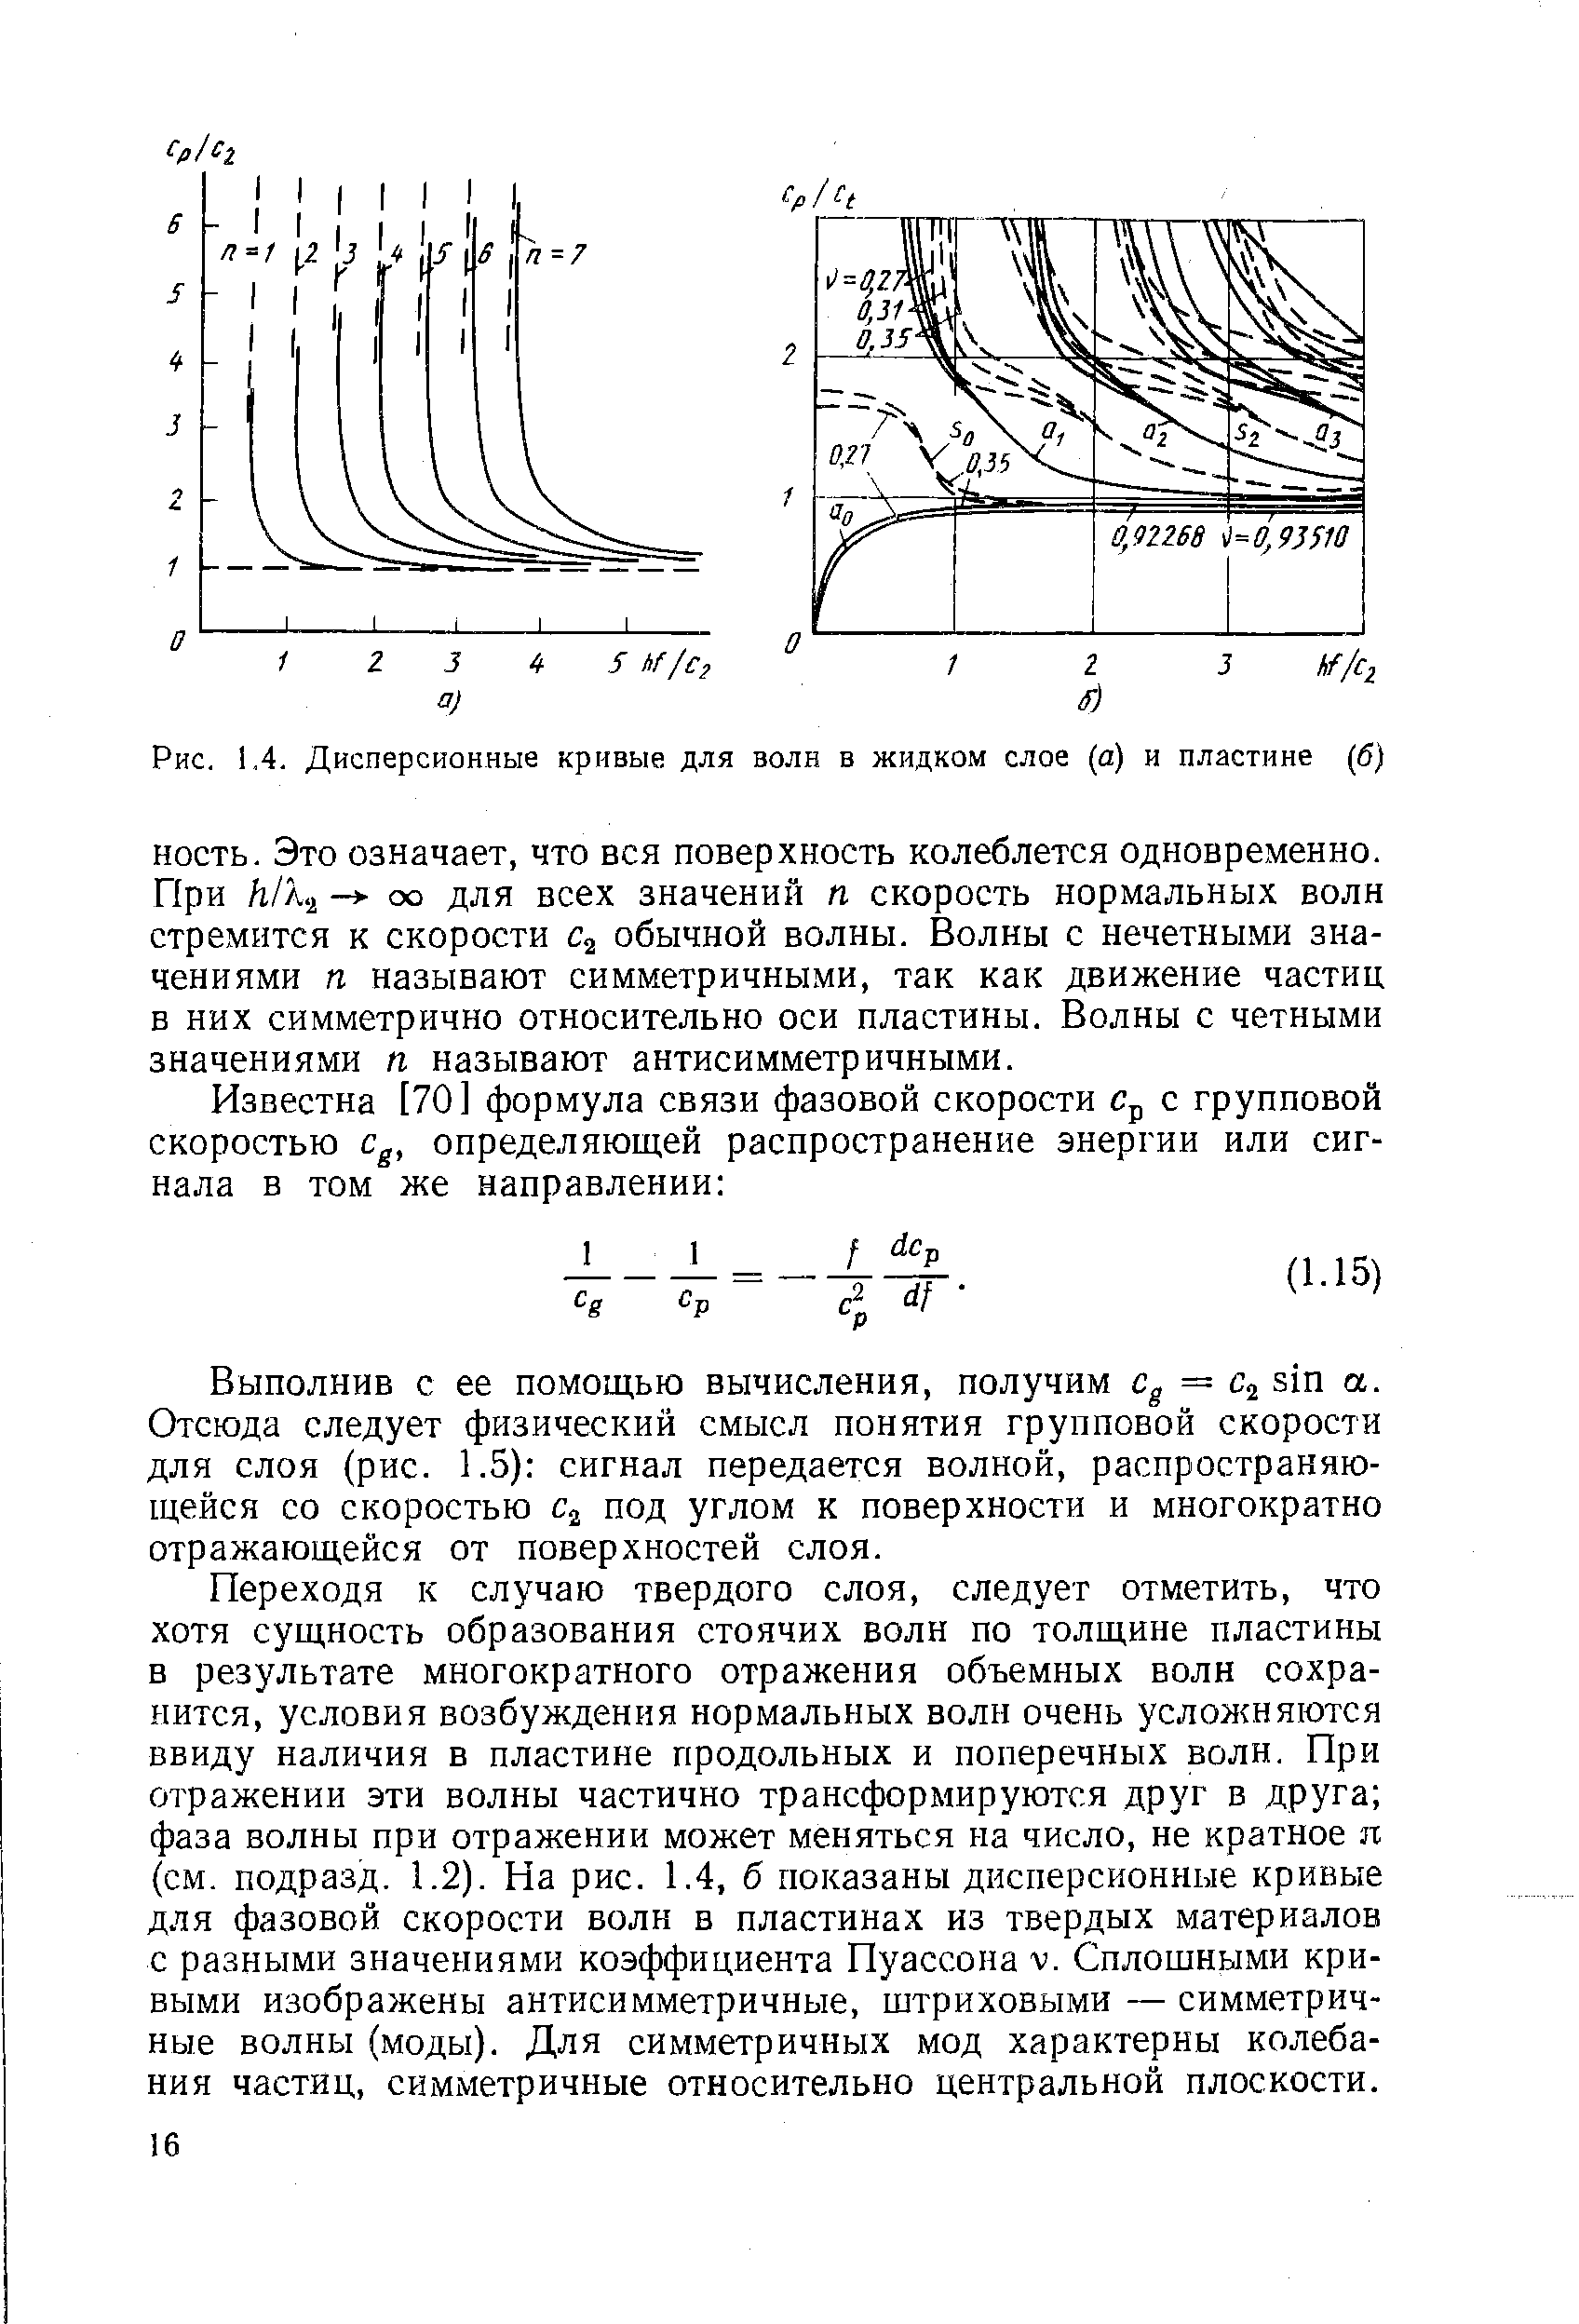 Рис. 1.4. Дисперсионные кривые для волн в жидком слое (а) и пластине (б)
